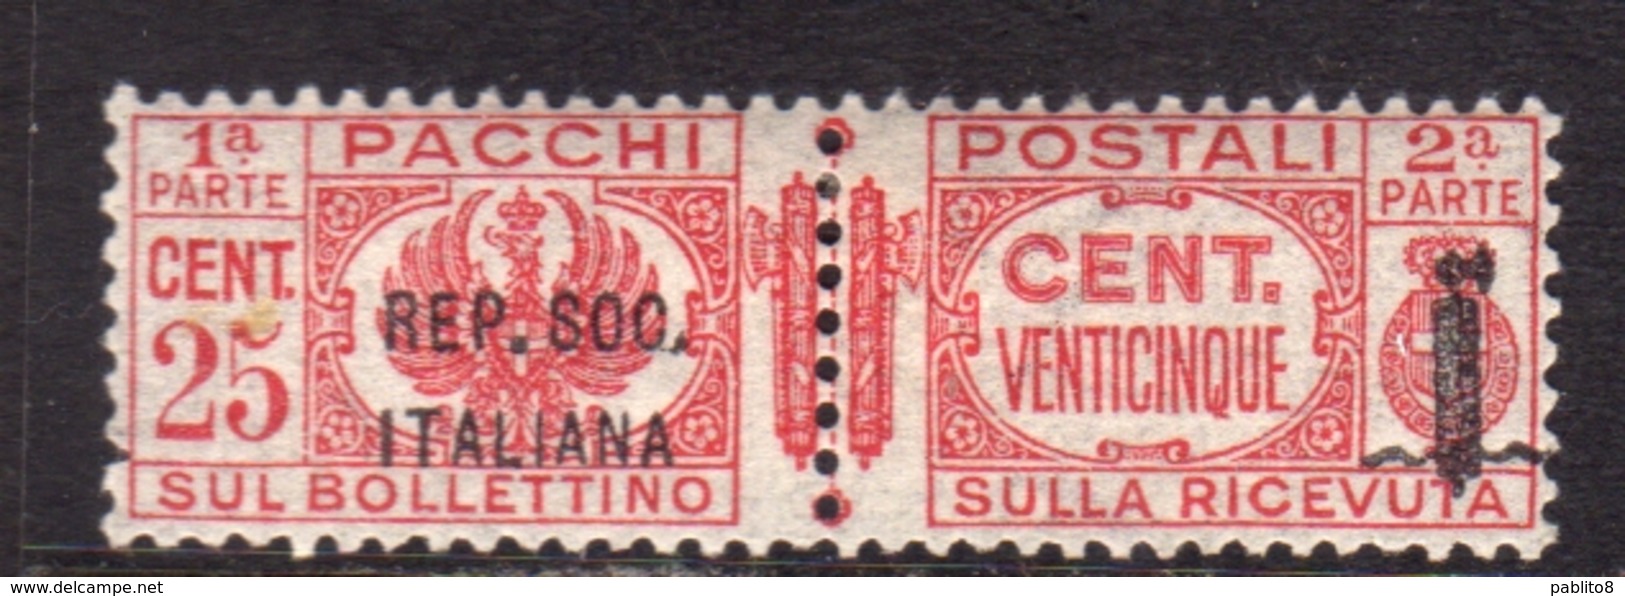 ITALIA REGNO ITALY KINGDOM 1944 RSI REPUBBLICA SOCIALE ITALIANA PACCHI POSTALI PARCEL POST FASCIO CENT. 25c MNH - Postpaketten